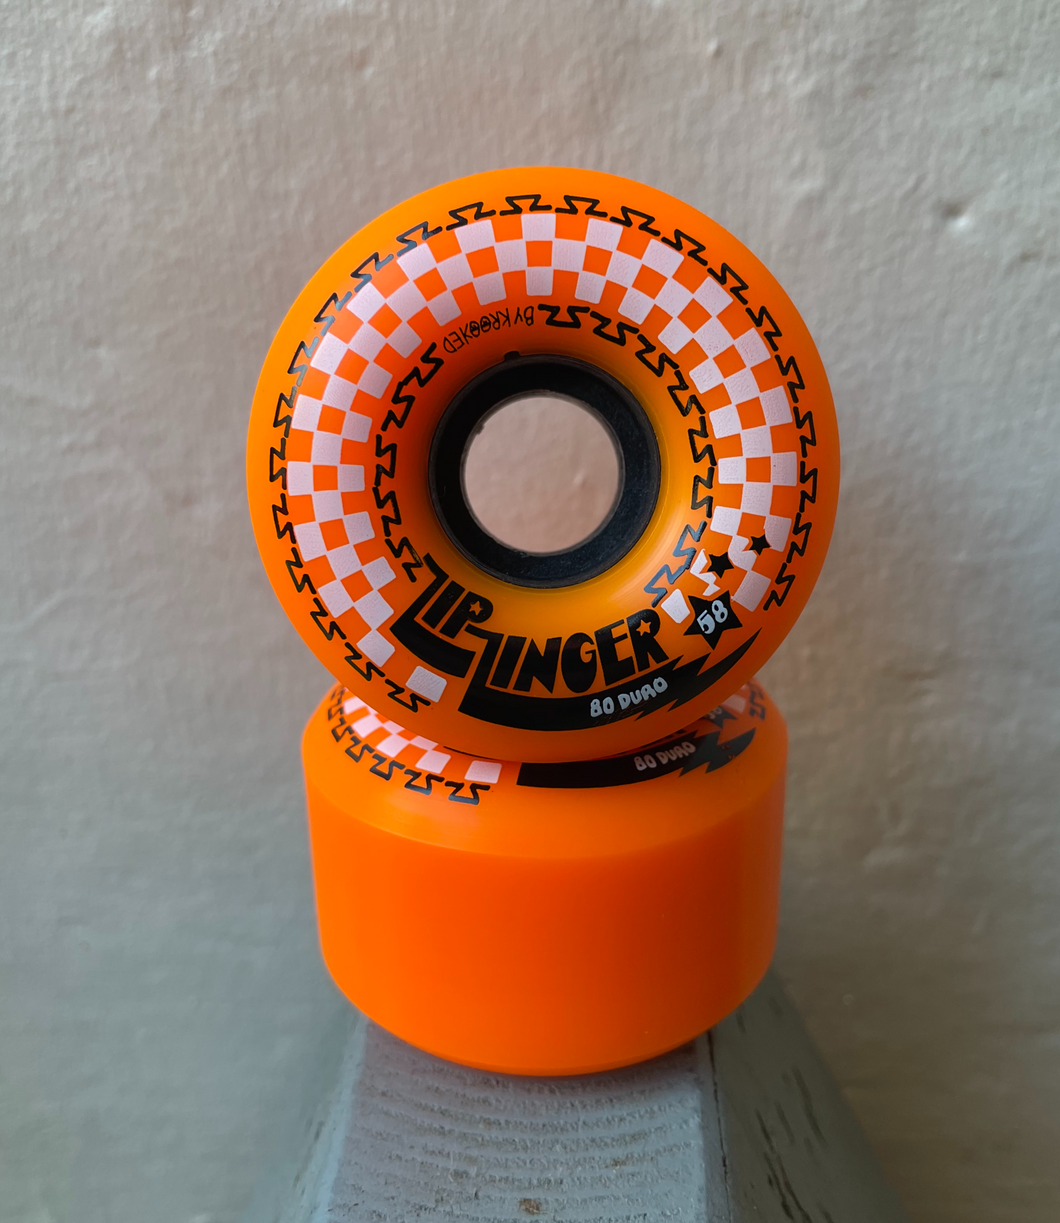 Krooked Zipzinger Soft Skateboard Wheels 58mm